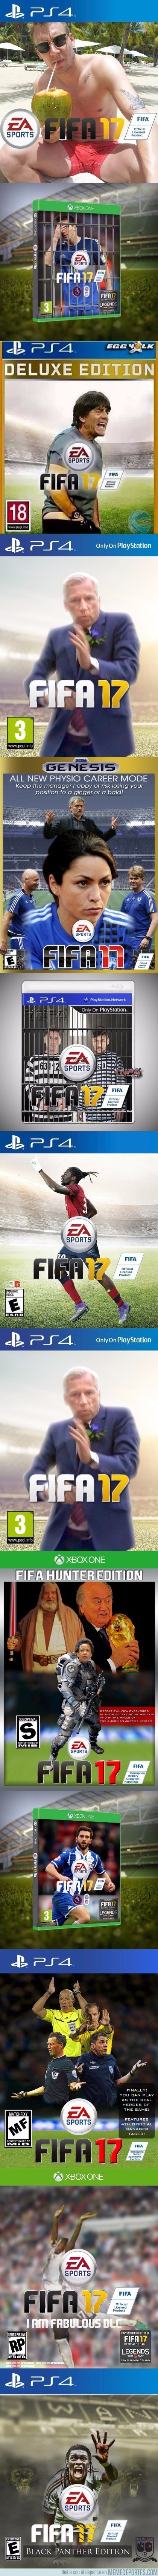 892526 - Salen a la luz las portadas de edición limitada del próximo FIFA 17